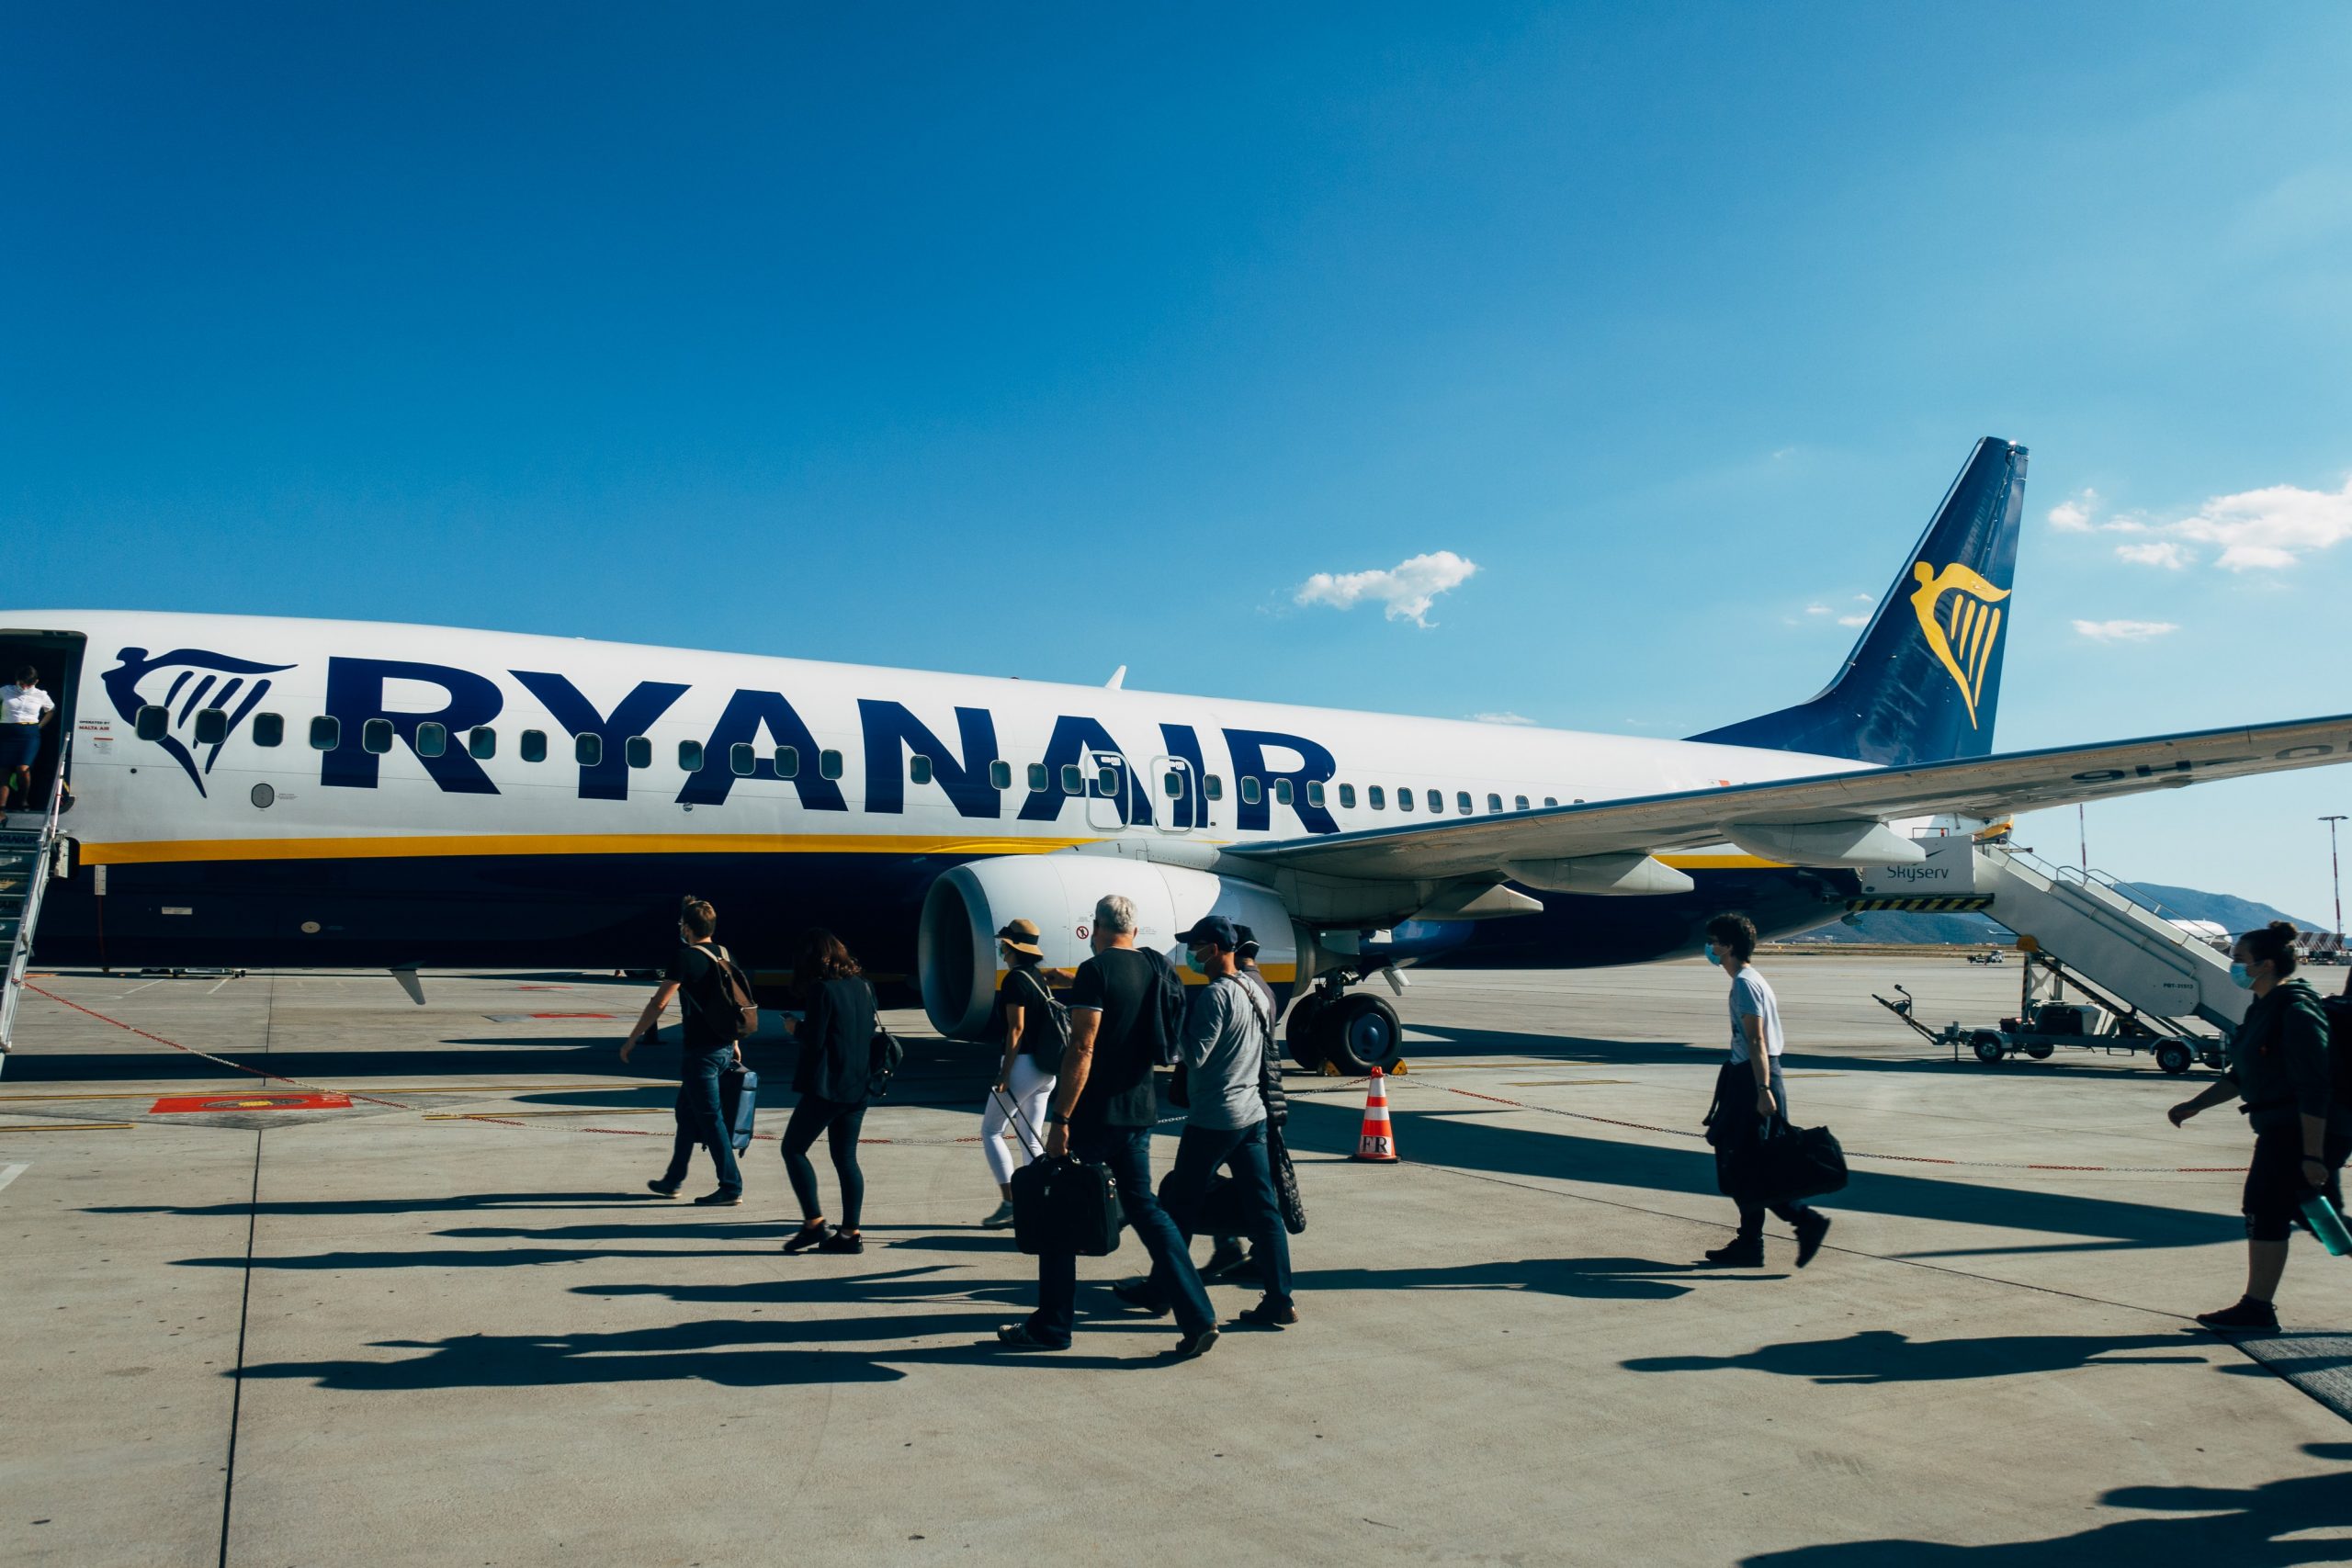 Tikai šodien! Ryanair helovīnu izpārdošana, lidojumi sākot no €5!